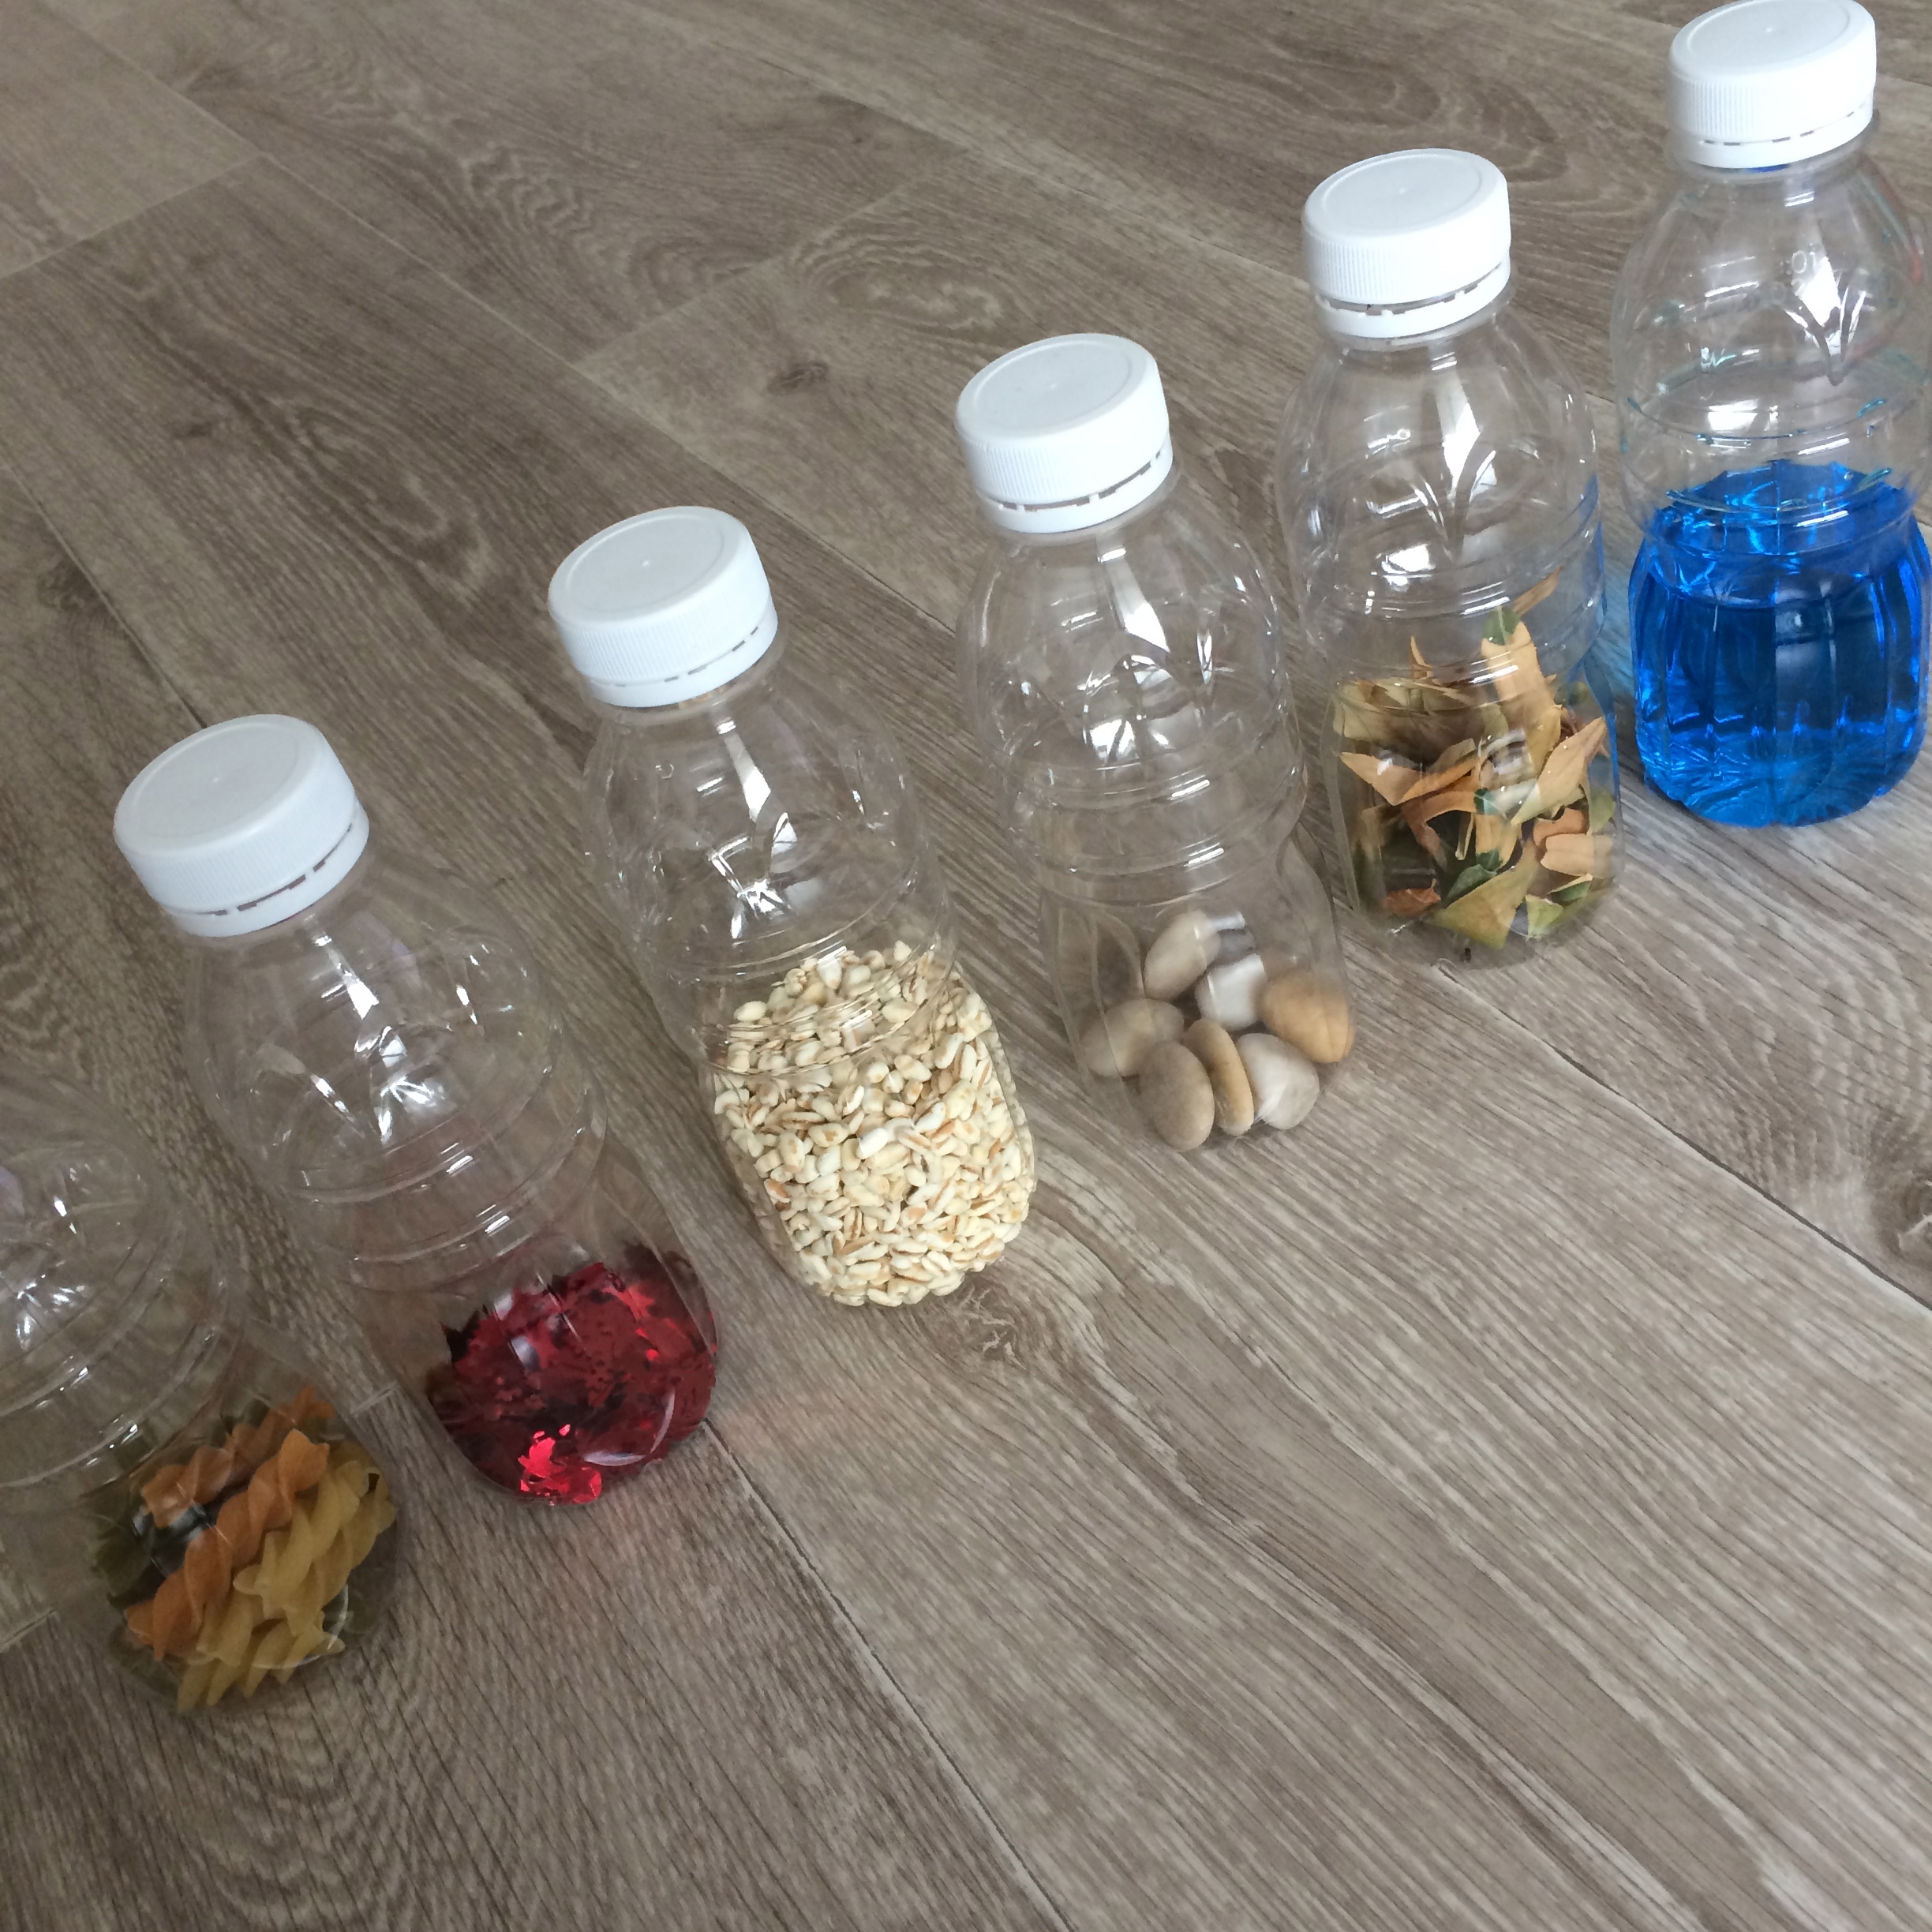 Activités d'éveil Montessori: créer des bouteilles sensorielles